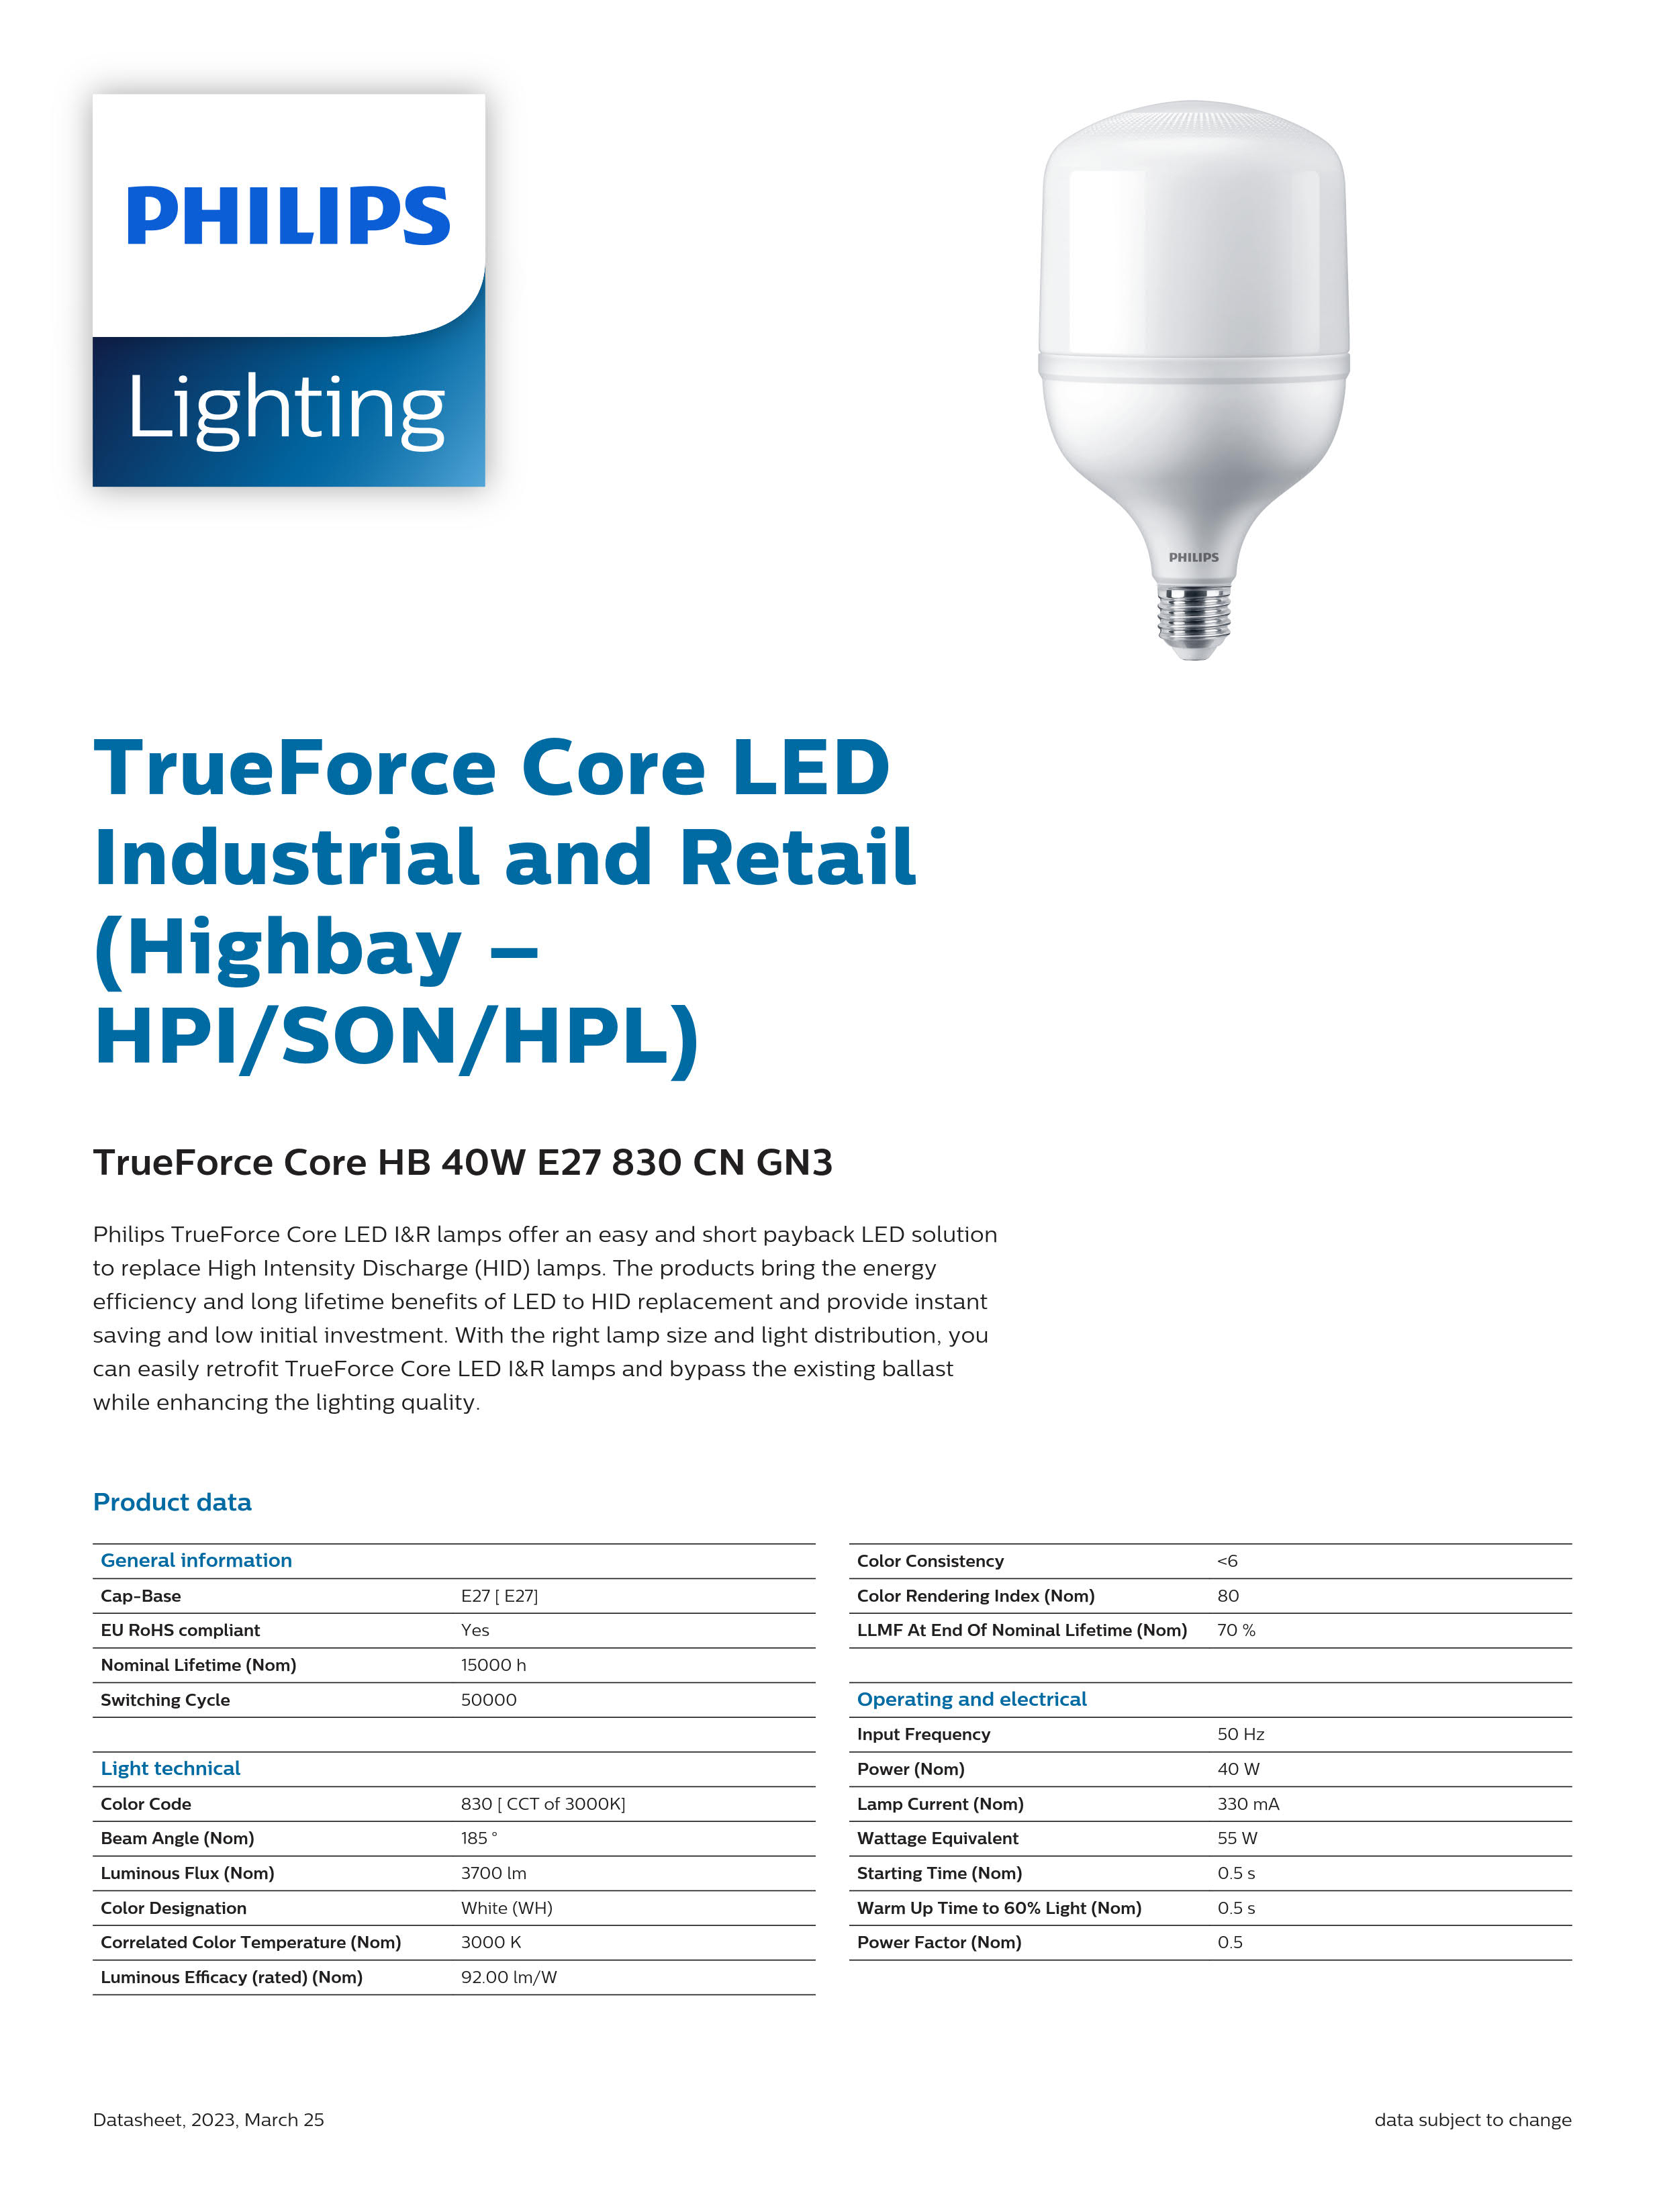 PHILIPS LED Bulb TrueForce Core HB 40W E27 840 CN GN3 29002410710